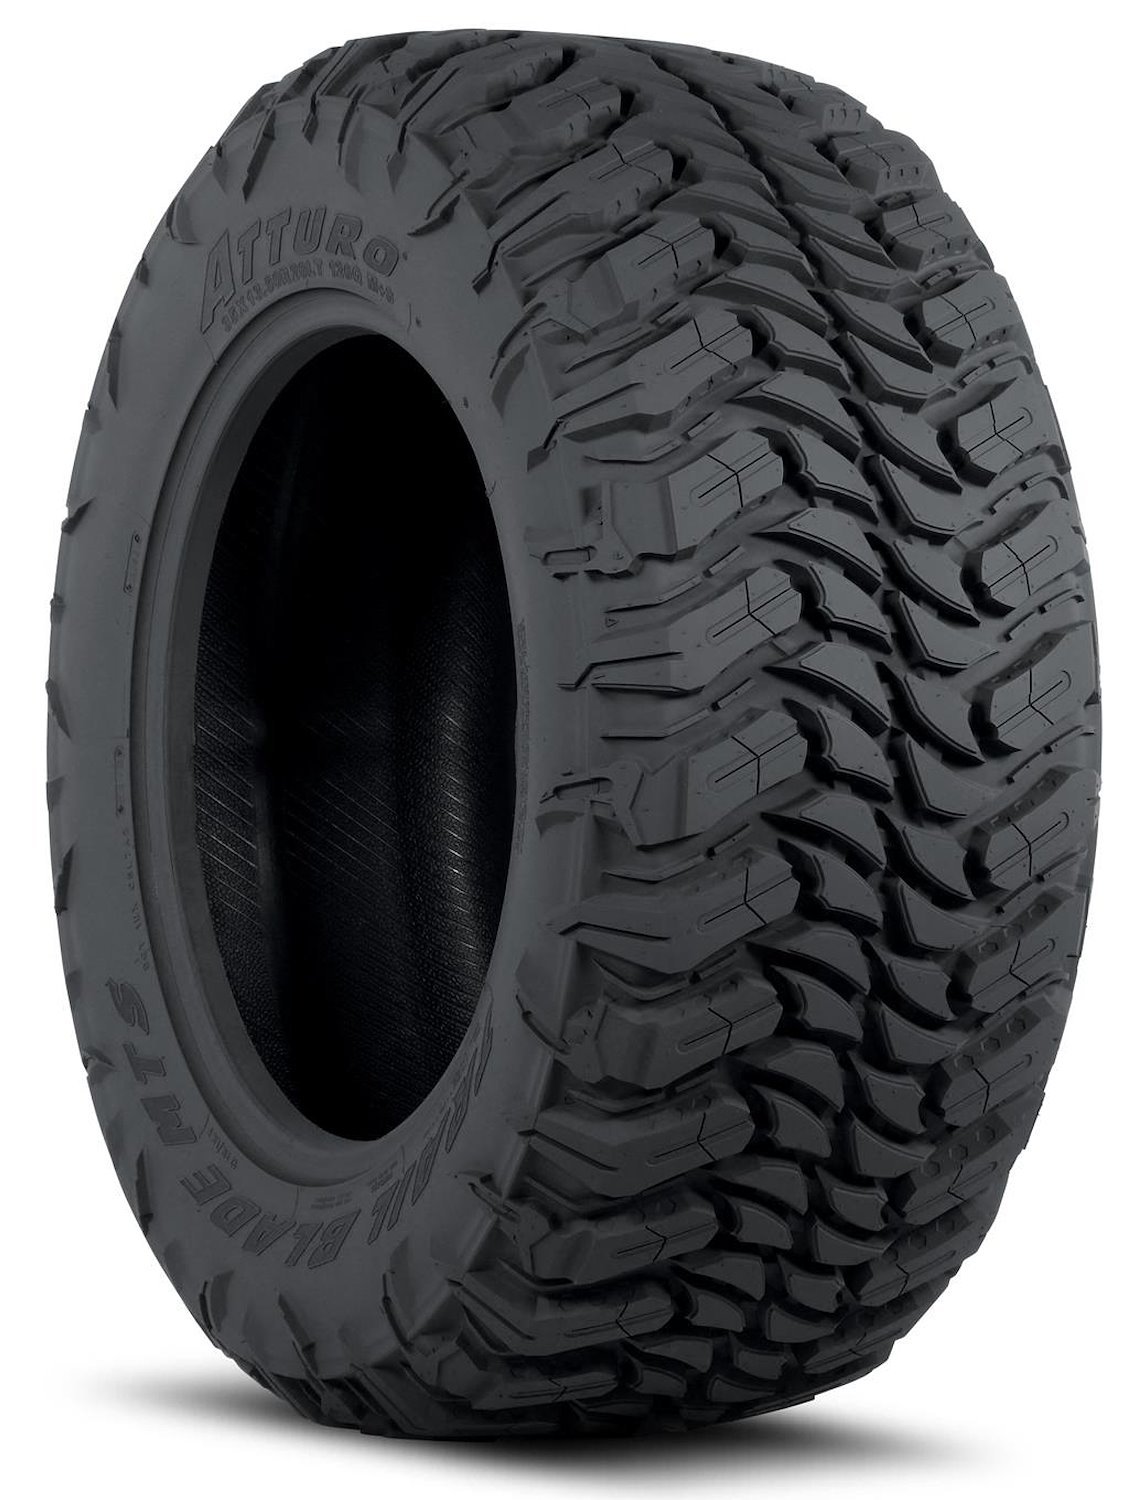 TBMS-LH5T2MA Trail Blade MTS Tire, 33x12.50R18LT